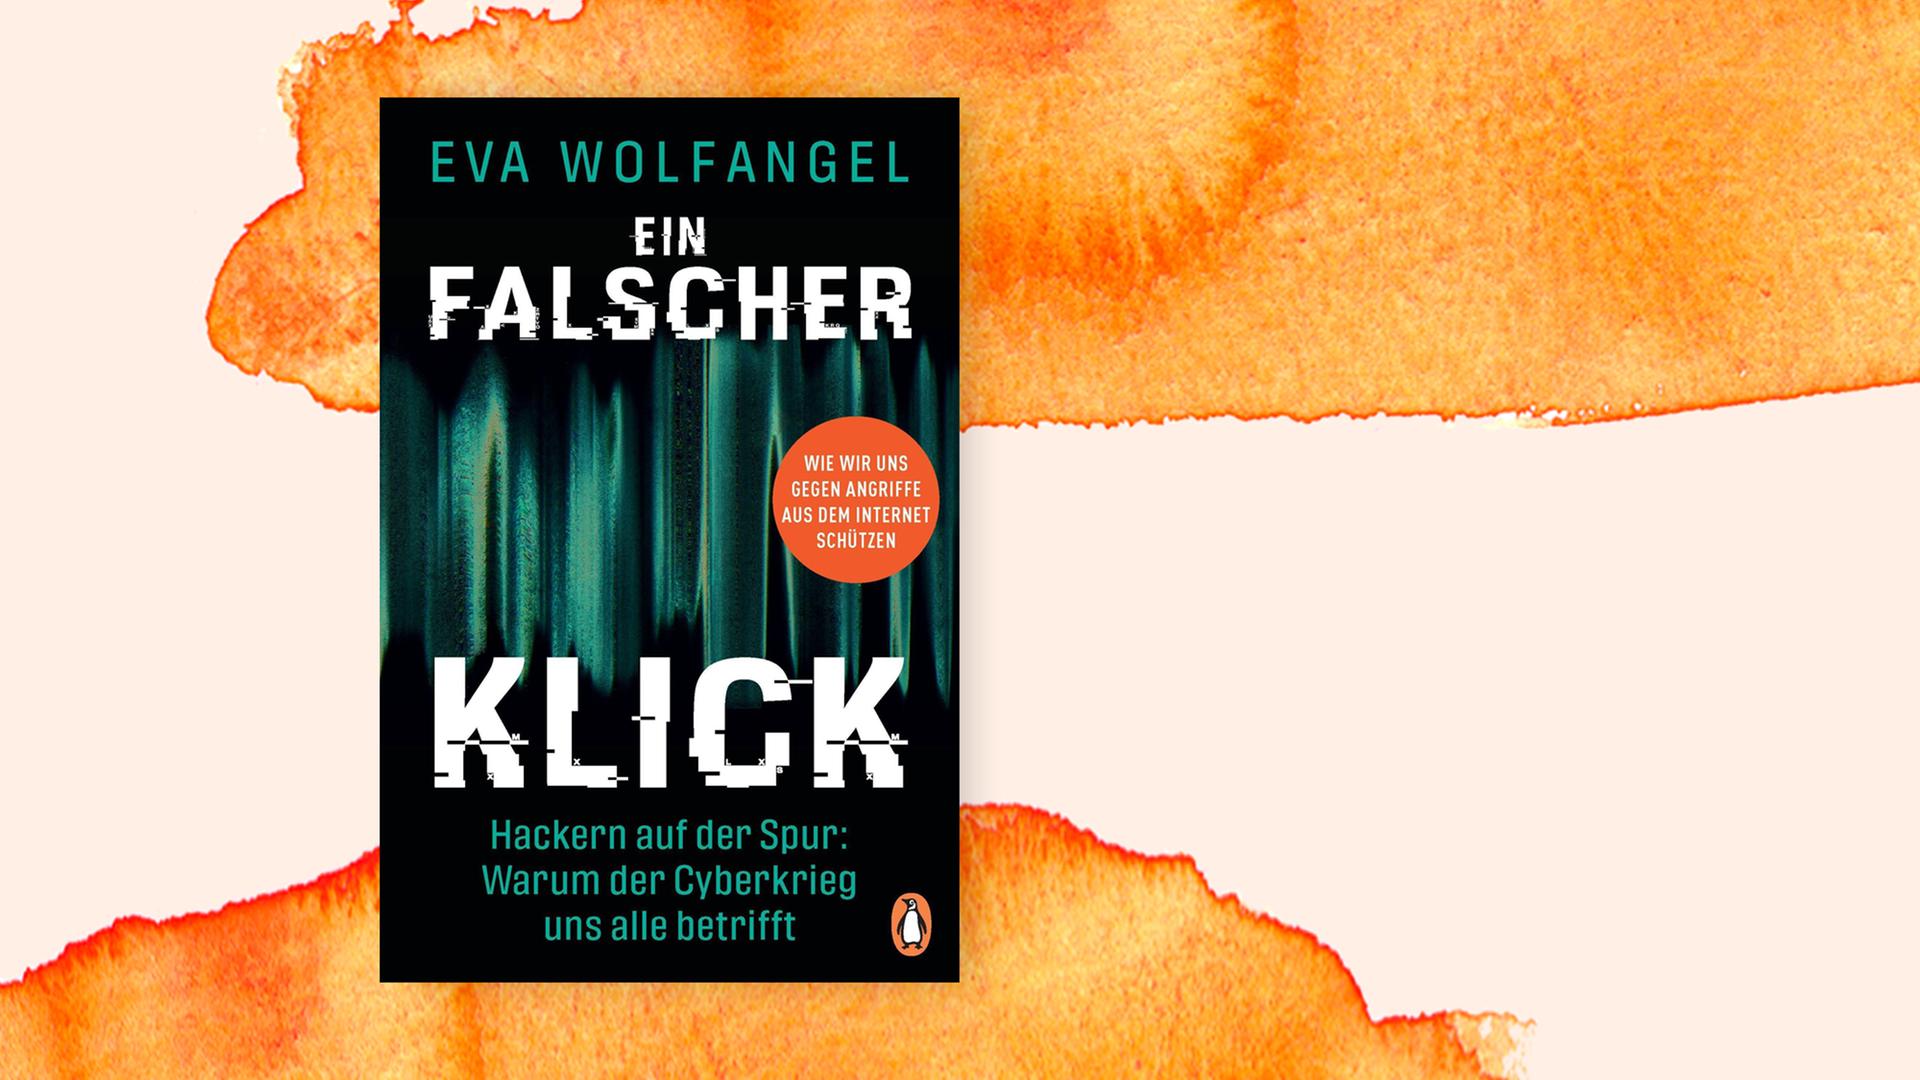 Cover des Buches "Ein falscher Klick" von Eva Wolfangel. Die Grundfarbe des Covers ist Schwarz, darauf grüne, senkrechte Spuren, die an Nordlichter erinnern und vermutlich die Bewegungen im Netz visualisieren sollen. 